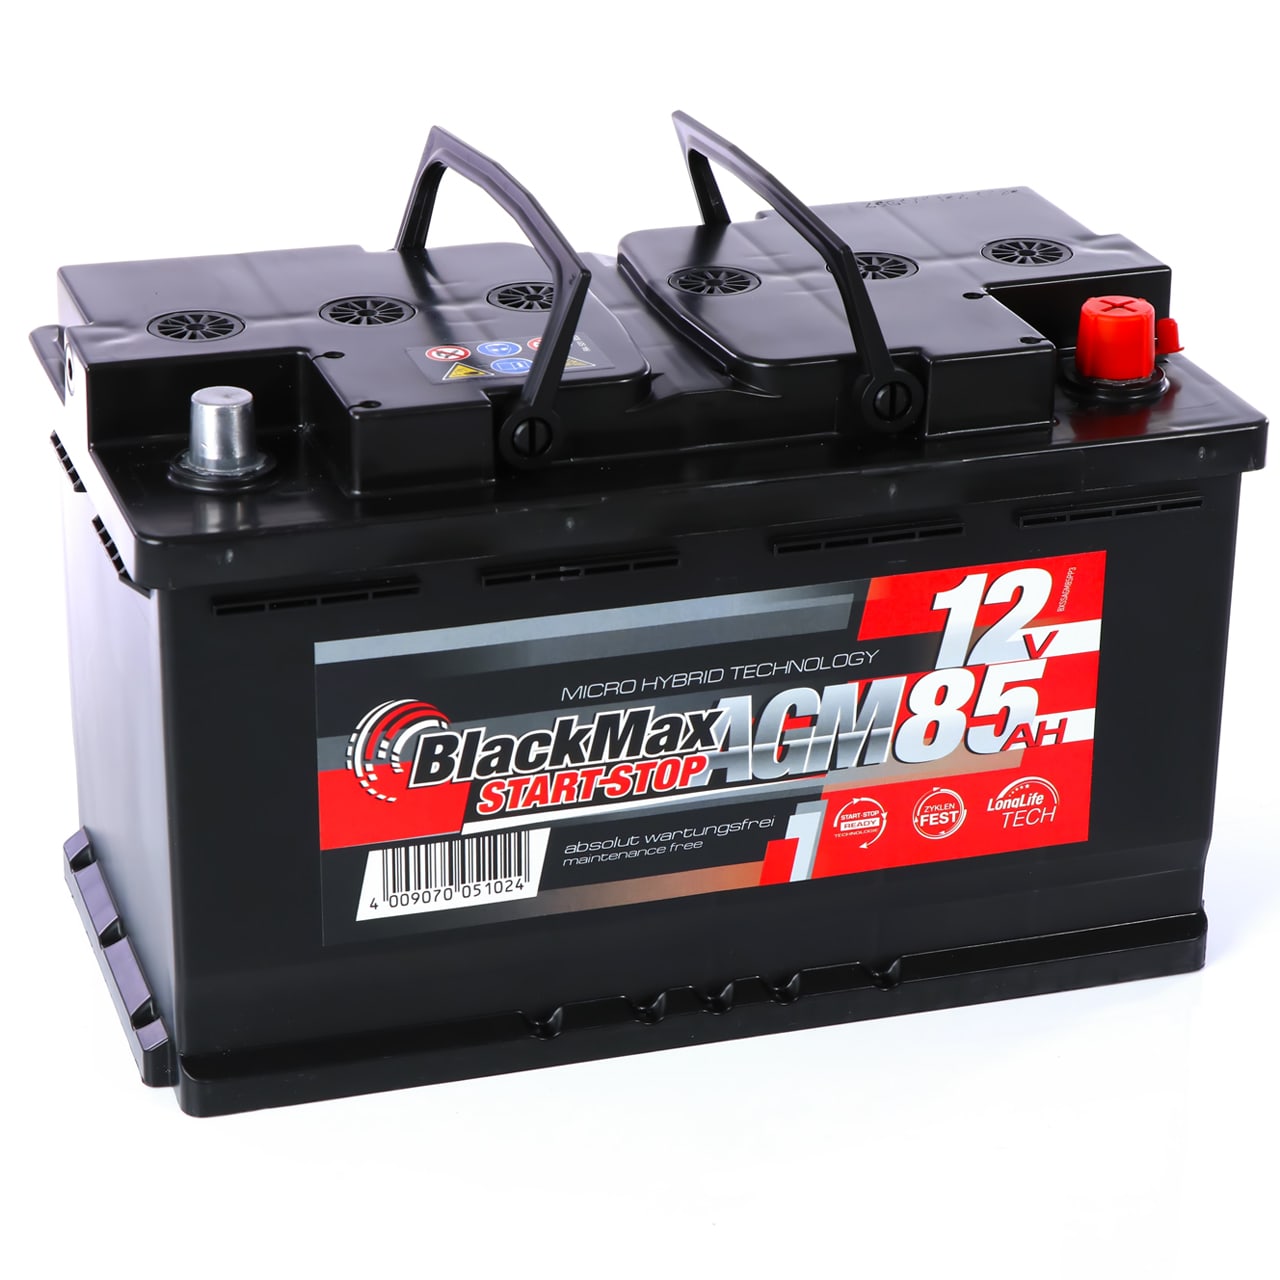 Autobatterie AGM 12V 85Ah BlackMax automotive für Start-Stop 80Ah